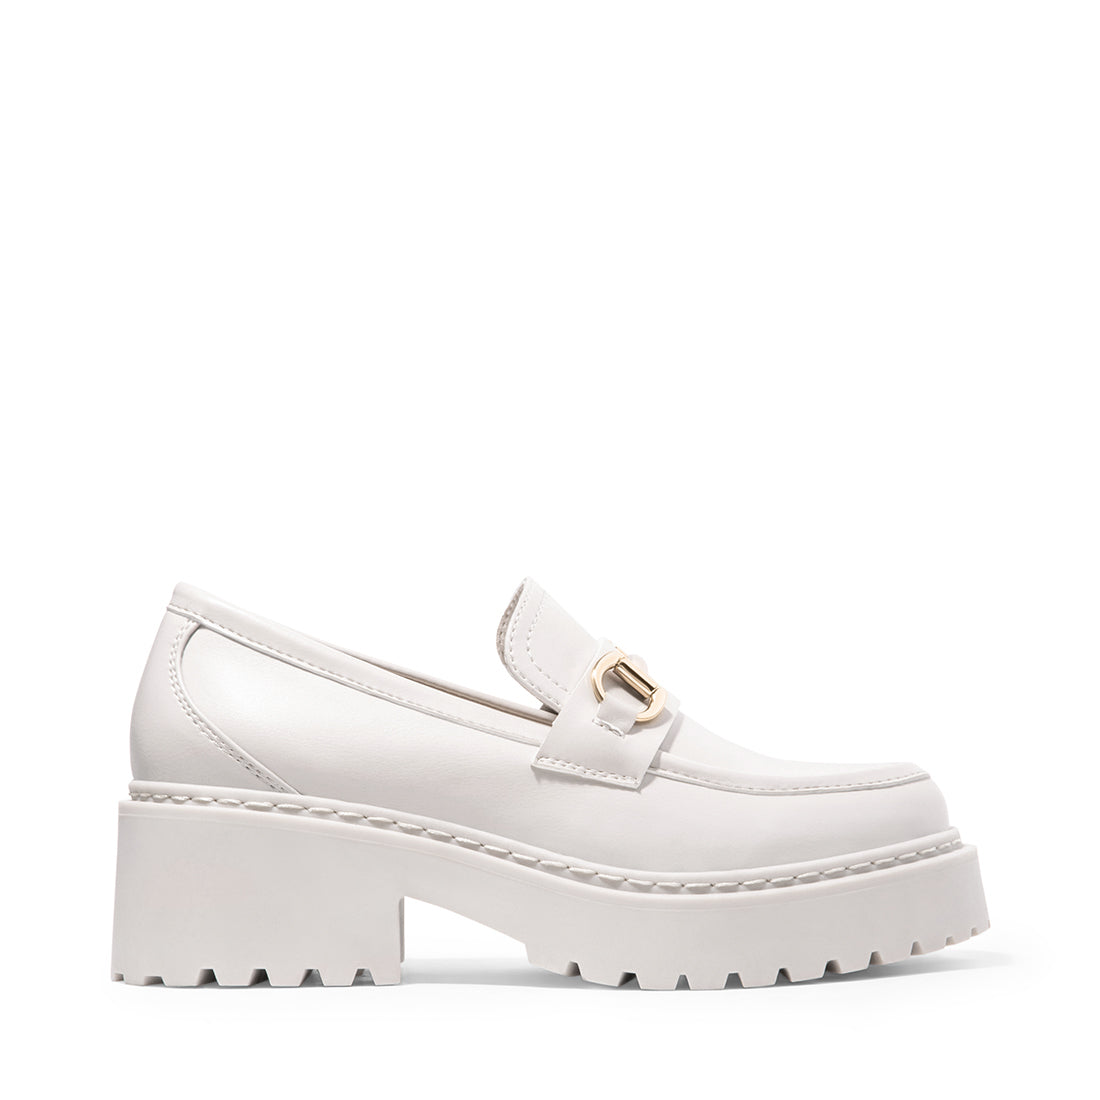 APPROACH Natural Platform Loafers | Women's Designer Loafers – Steve ...